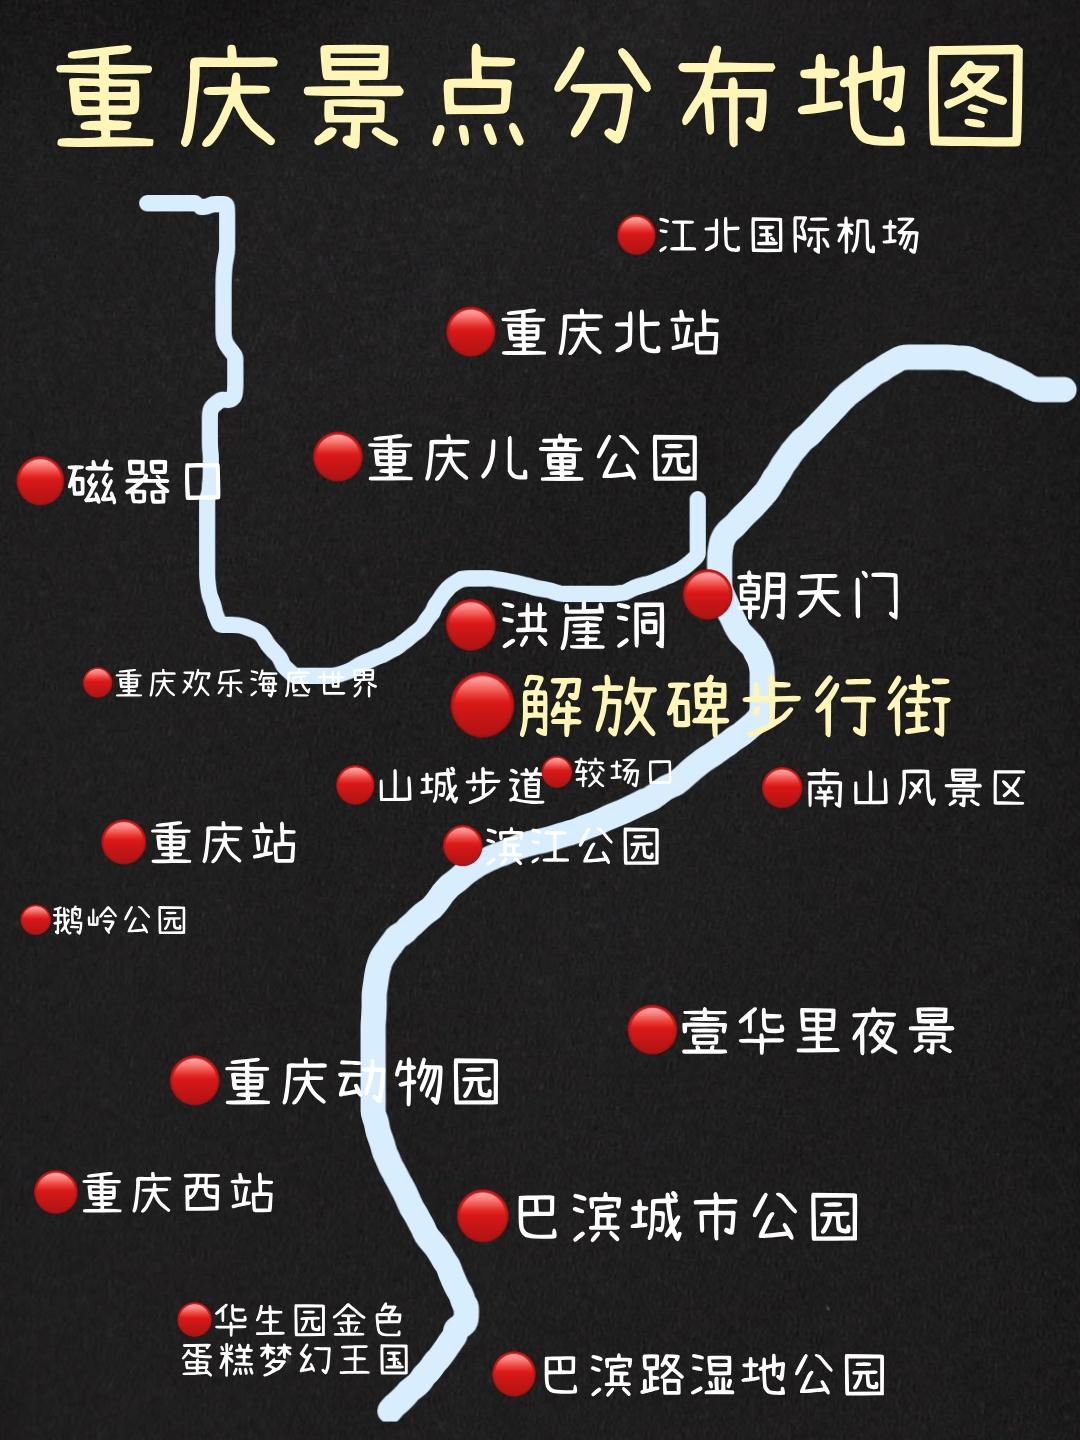 重庆旅游行李寄存攻略,地铁沿线景点,重庆美食街